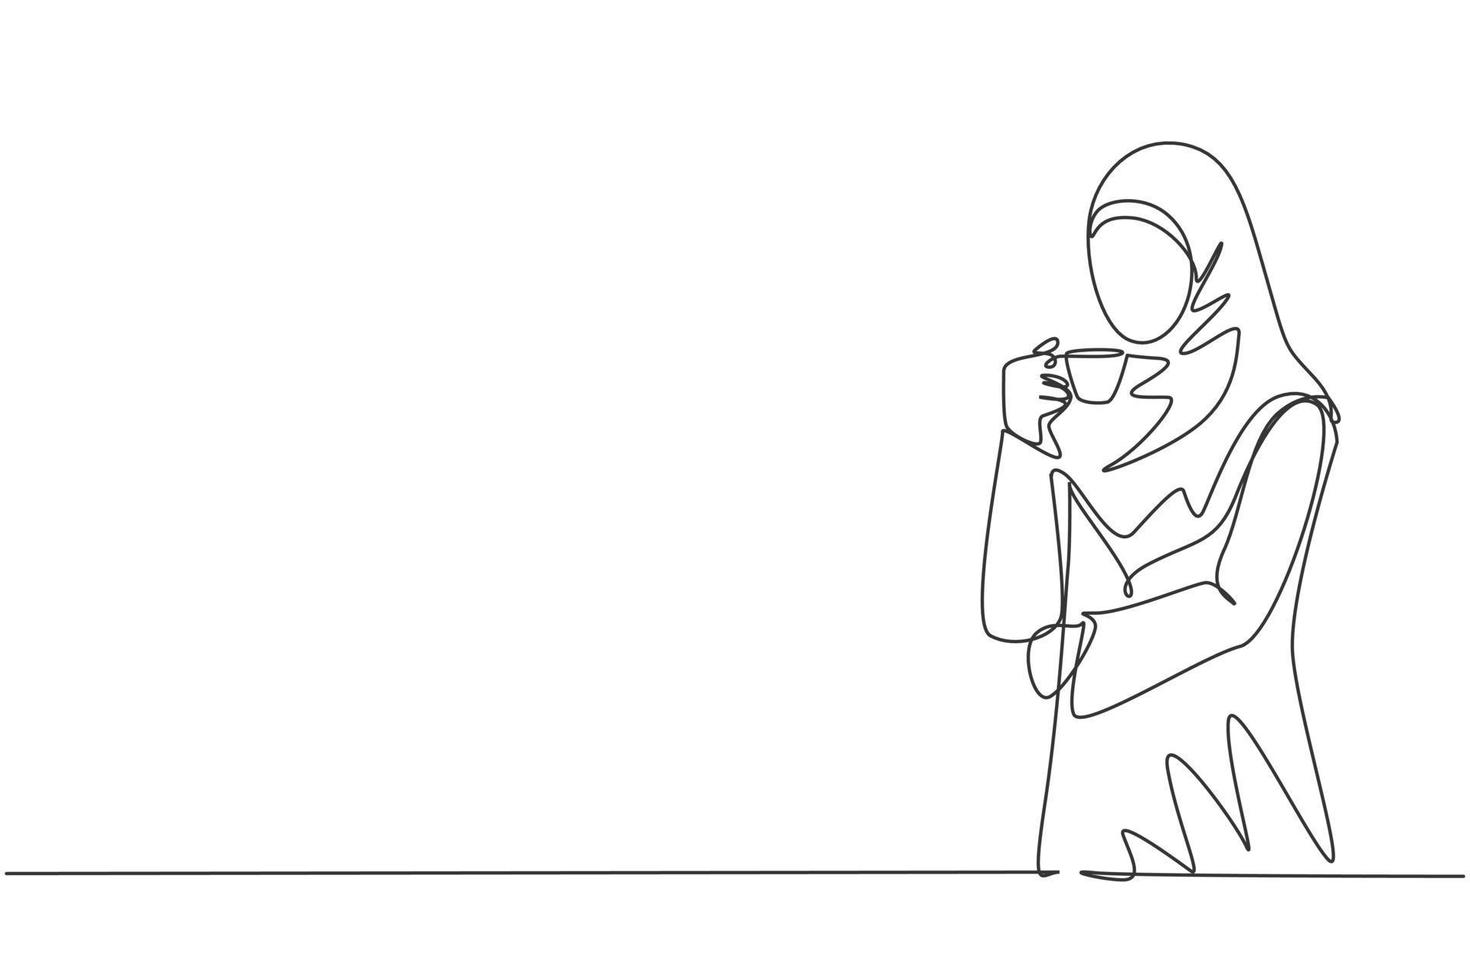 een doorlopende lijntekening van jonge moslimzakenvrouw die zakelijke ideeën denkt terwijl ze een kopje koffie vasthoudt. Saoedi-Arabische vrouw met vel en hijab. één lijntekening illustratie vector